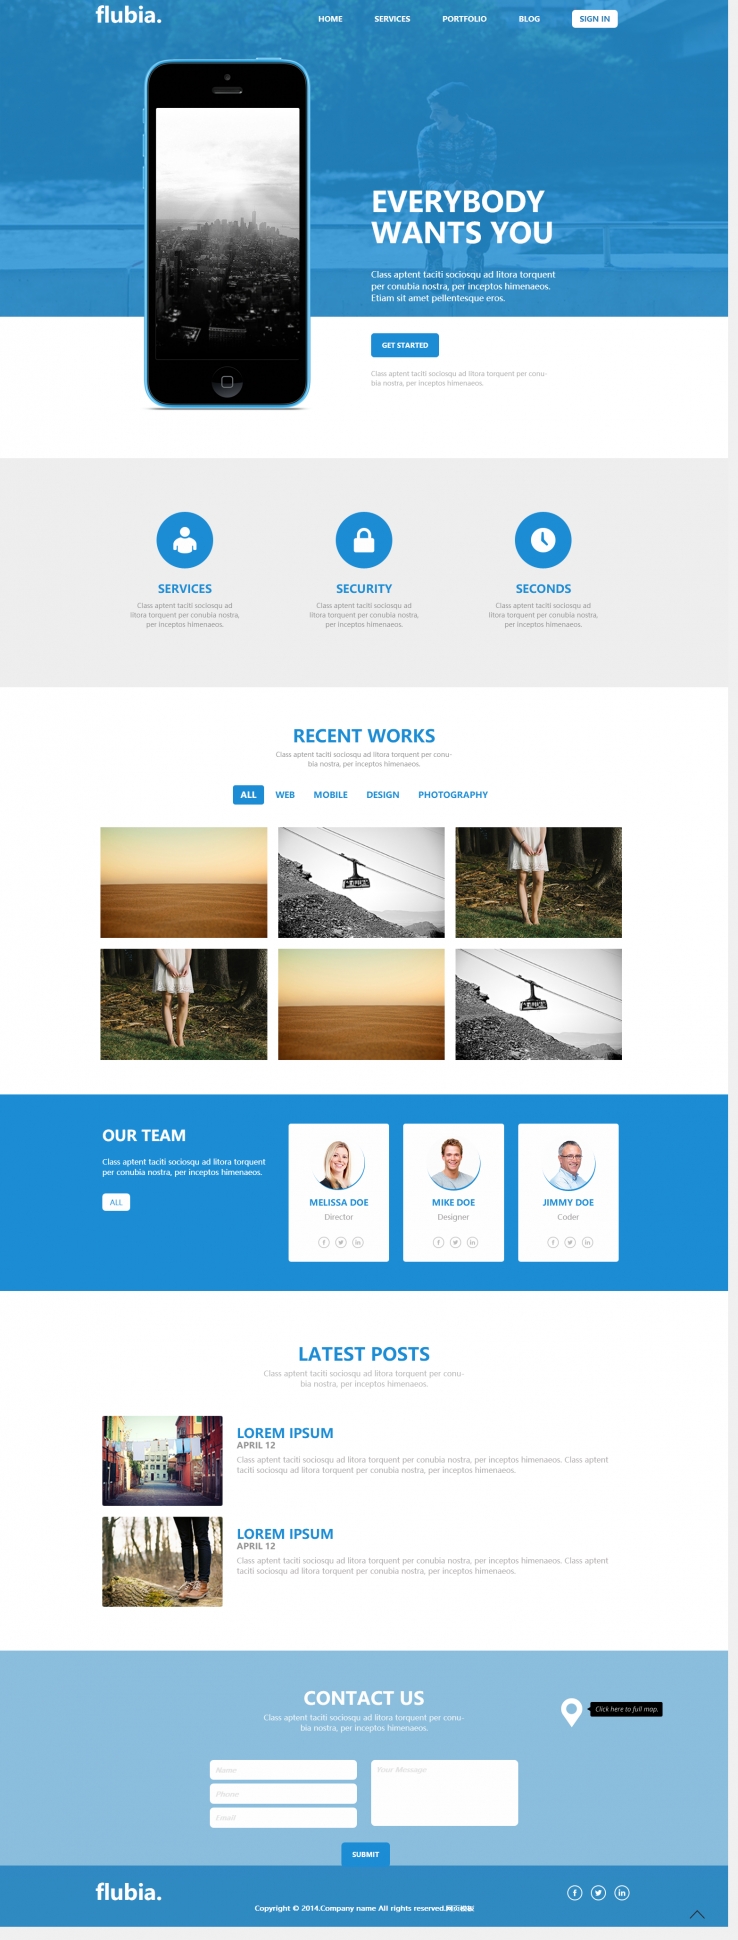 简洁蓝色风格的CSS3动画效果设计网页企业网站模板